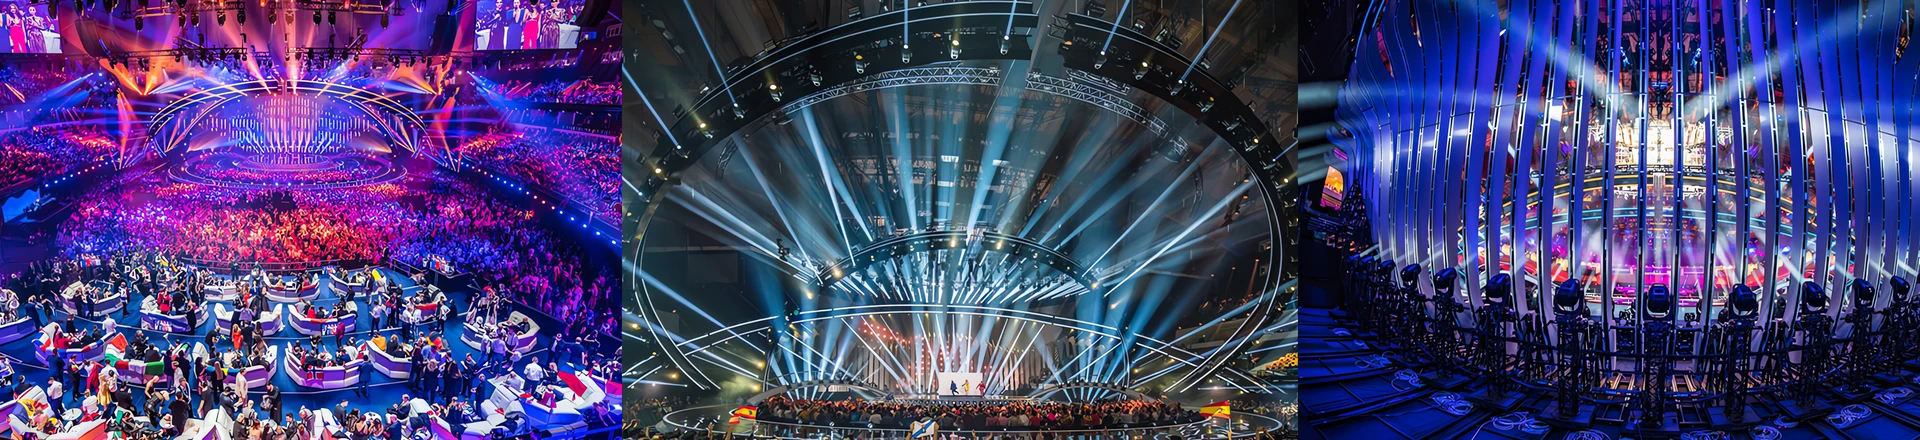 Clay Paky zdominowały festiwal "Eurovision 2018"